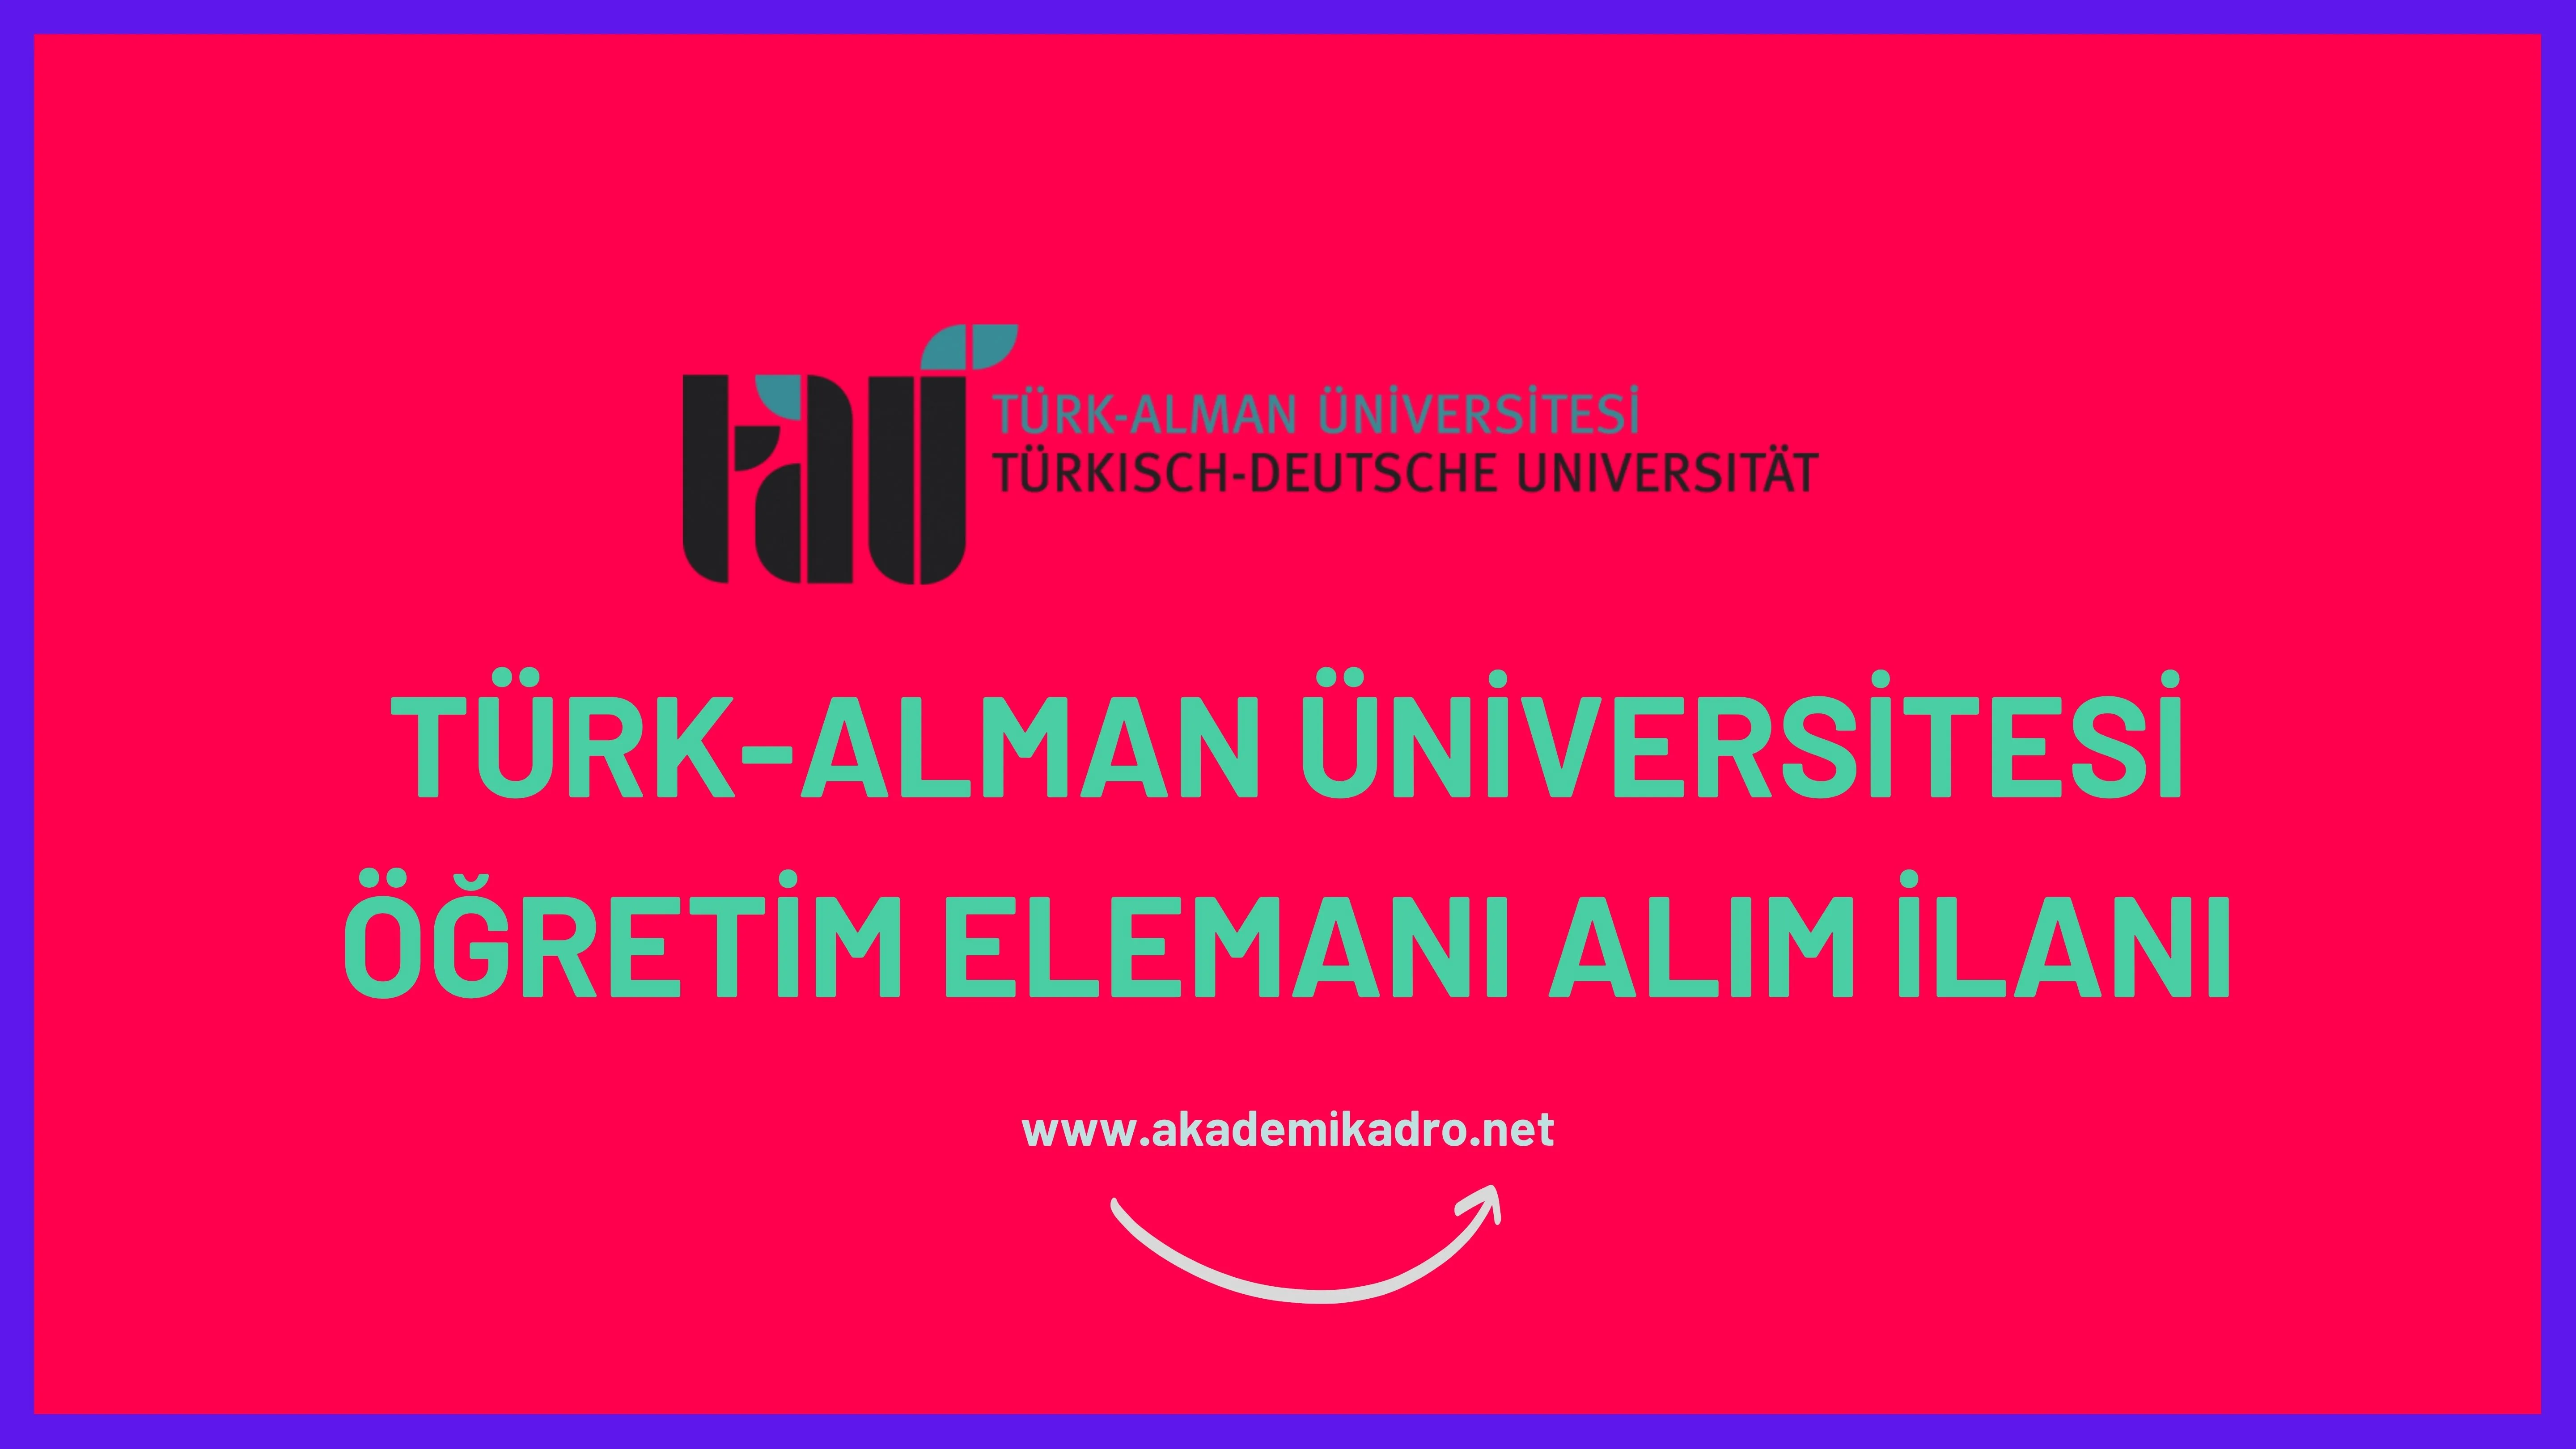 Türk-Alman Üniversitesi 3 Öğretim görevlisi, 10 Araştırma görevlisi ve birçok alandan 29 Öğretim üyesi alacak.